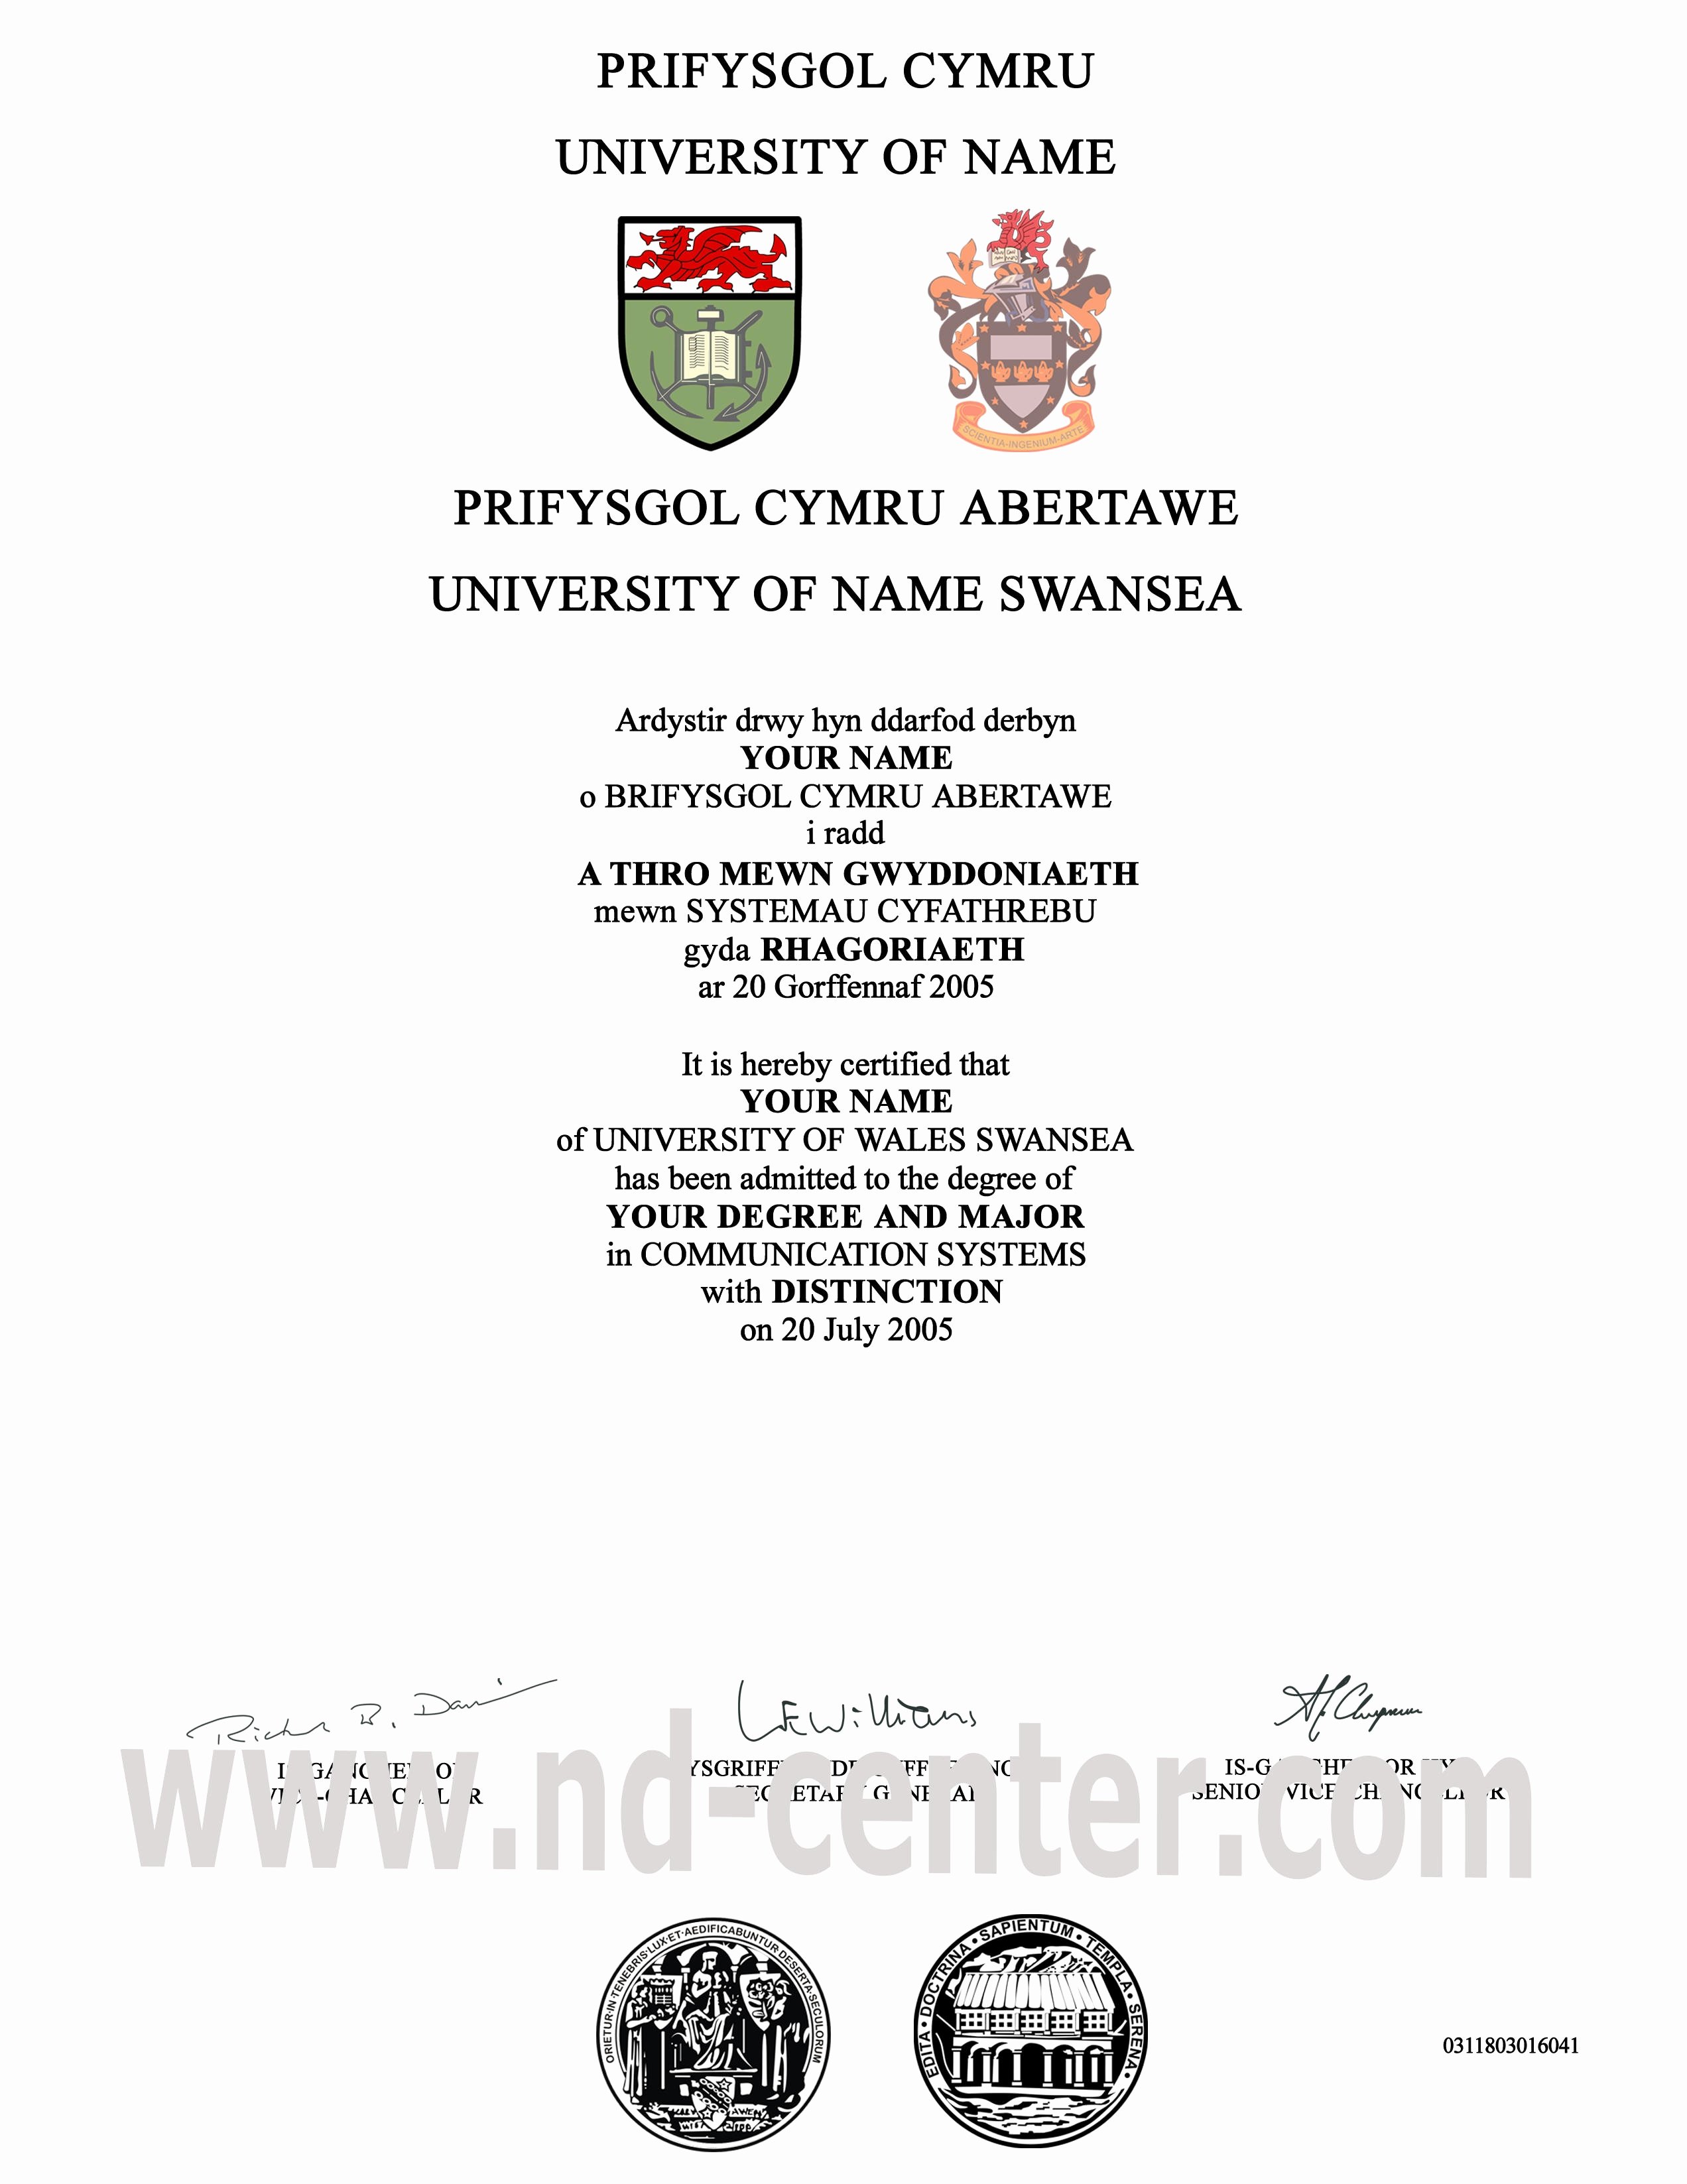 Fake Degree Certificate Template Inspirational Samples Of Fake High School Diplomas and Fake Diplomas